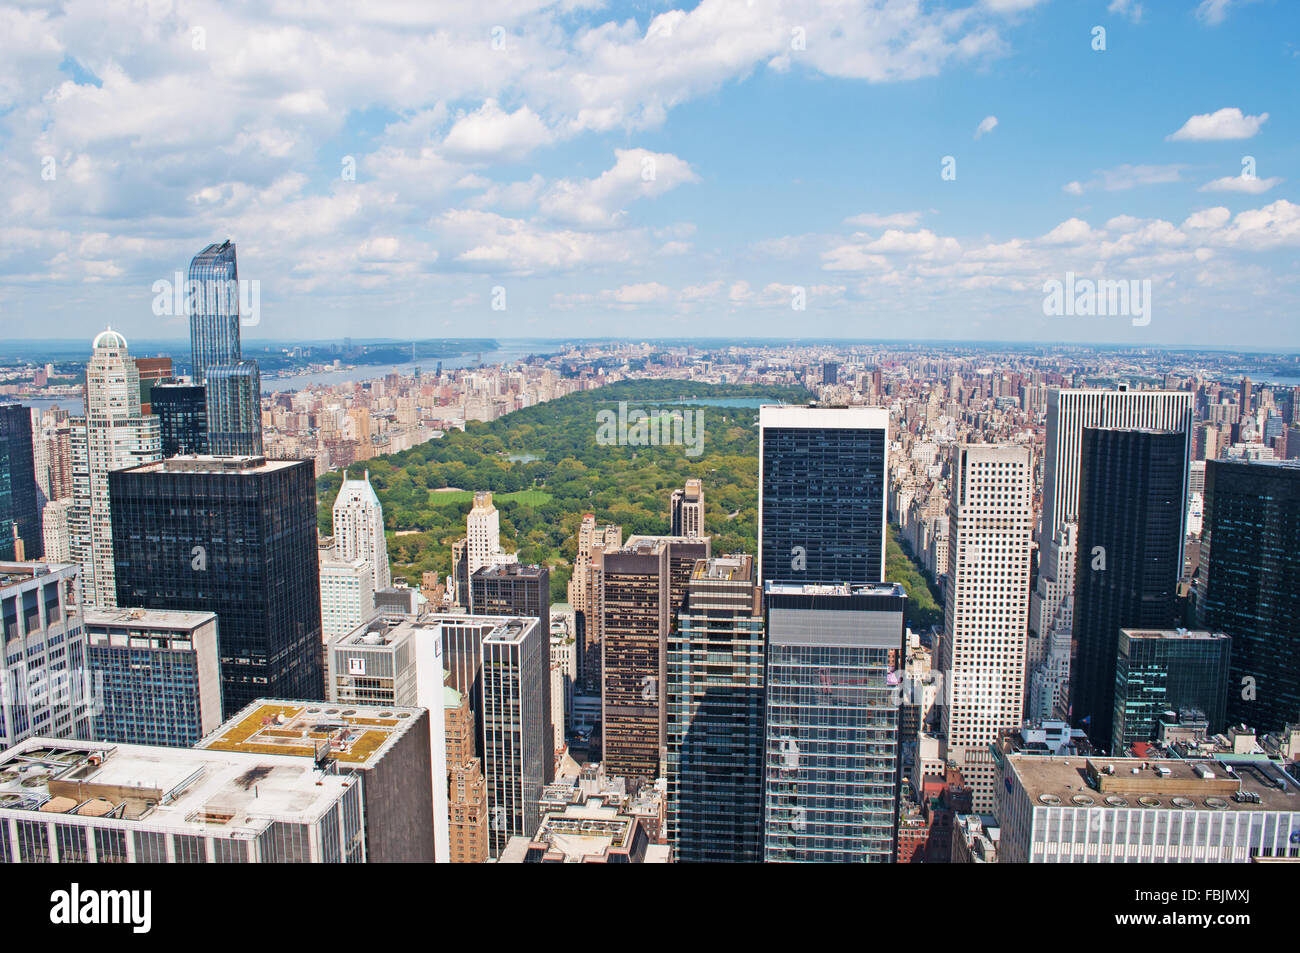 New York, Stati Uniti d'America: la skyline di Manhattan con grattacieli e Central Park visto dalla parte superiore della roccia, ponte di osservazione di Rockefeller Center Foto Stock